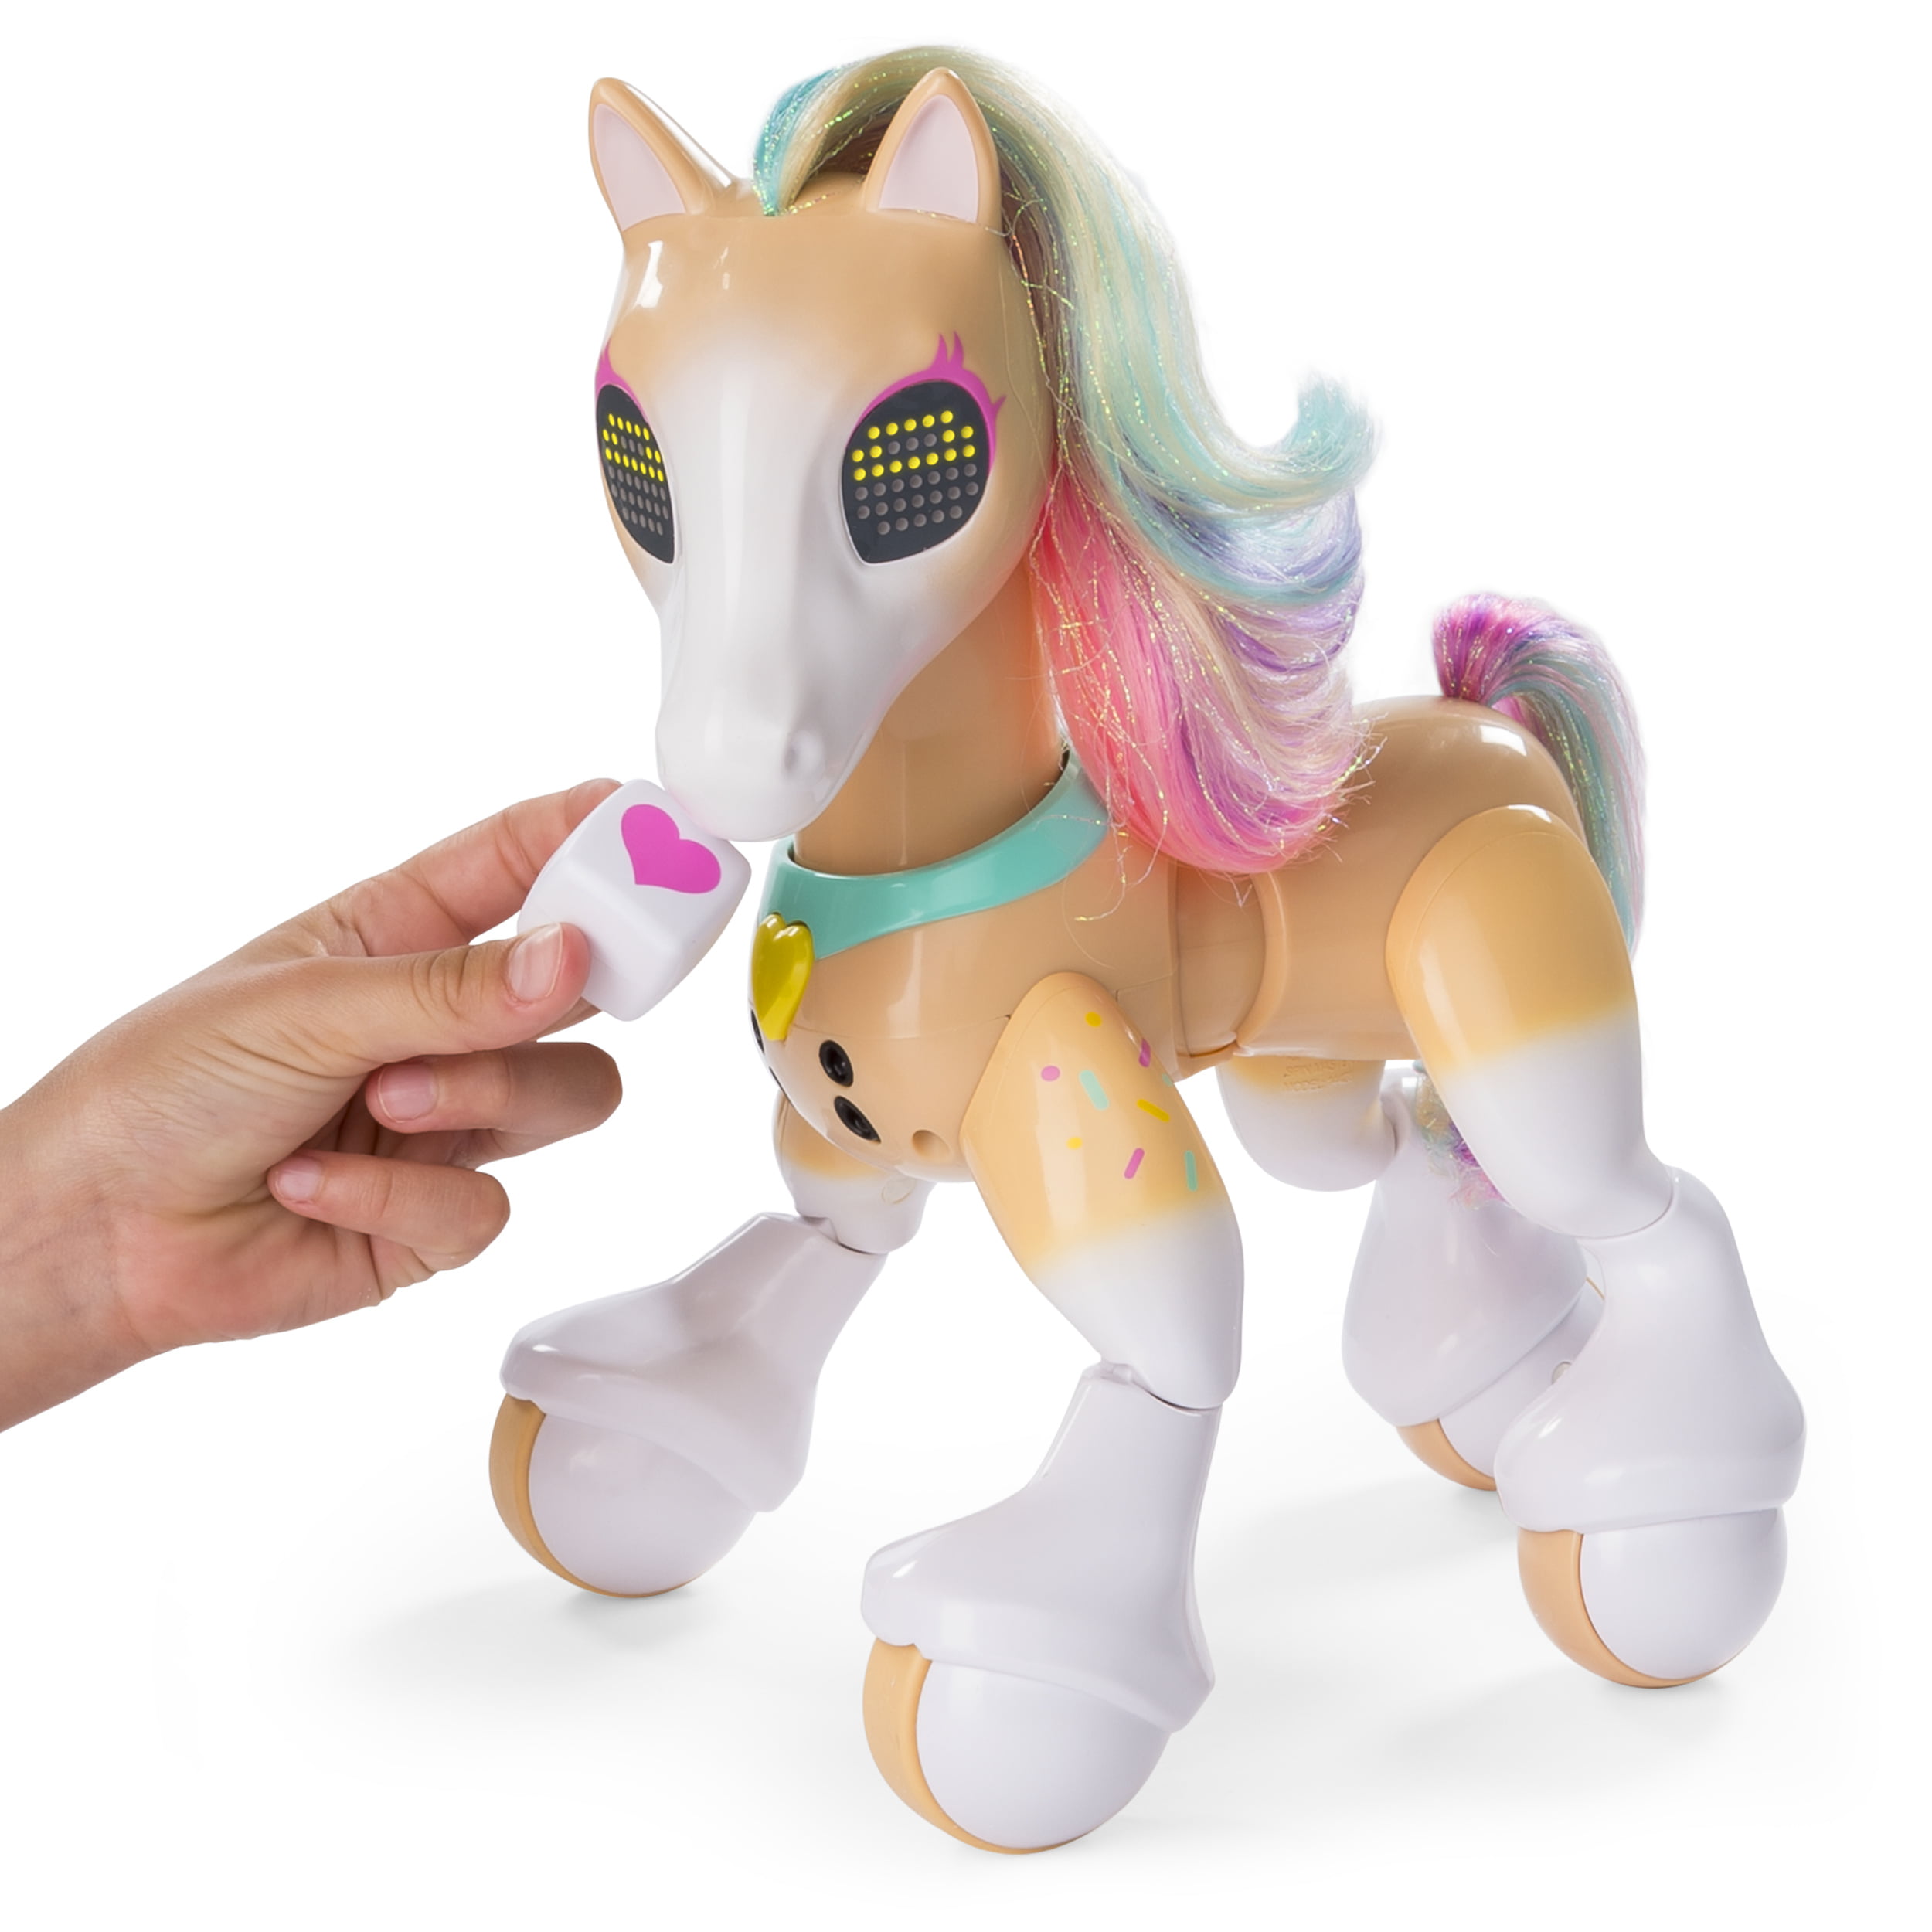 Show pony. Zoomer интерактивная игрушка пони. Zoomer лошадь. Интерактивная игрушка лошадь. Интерактивная лошадка пони.